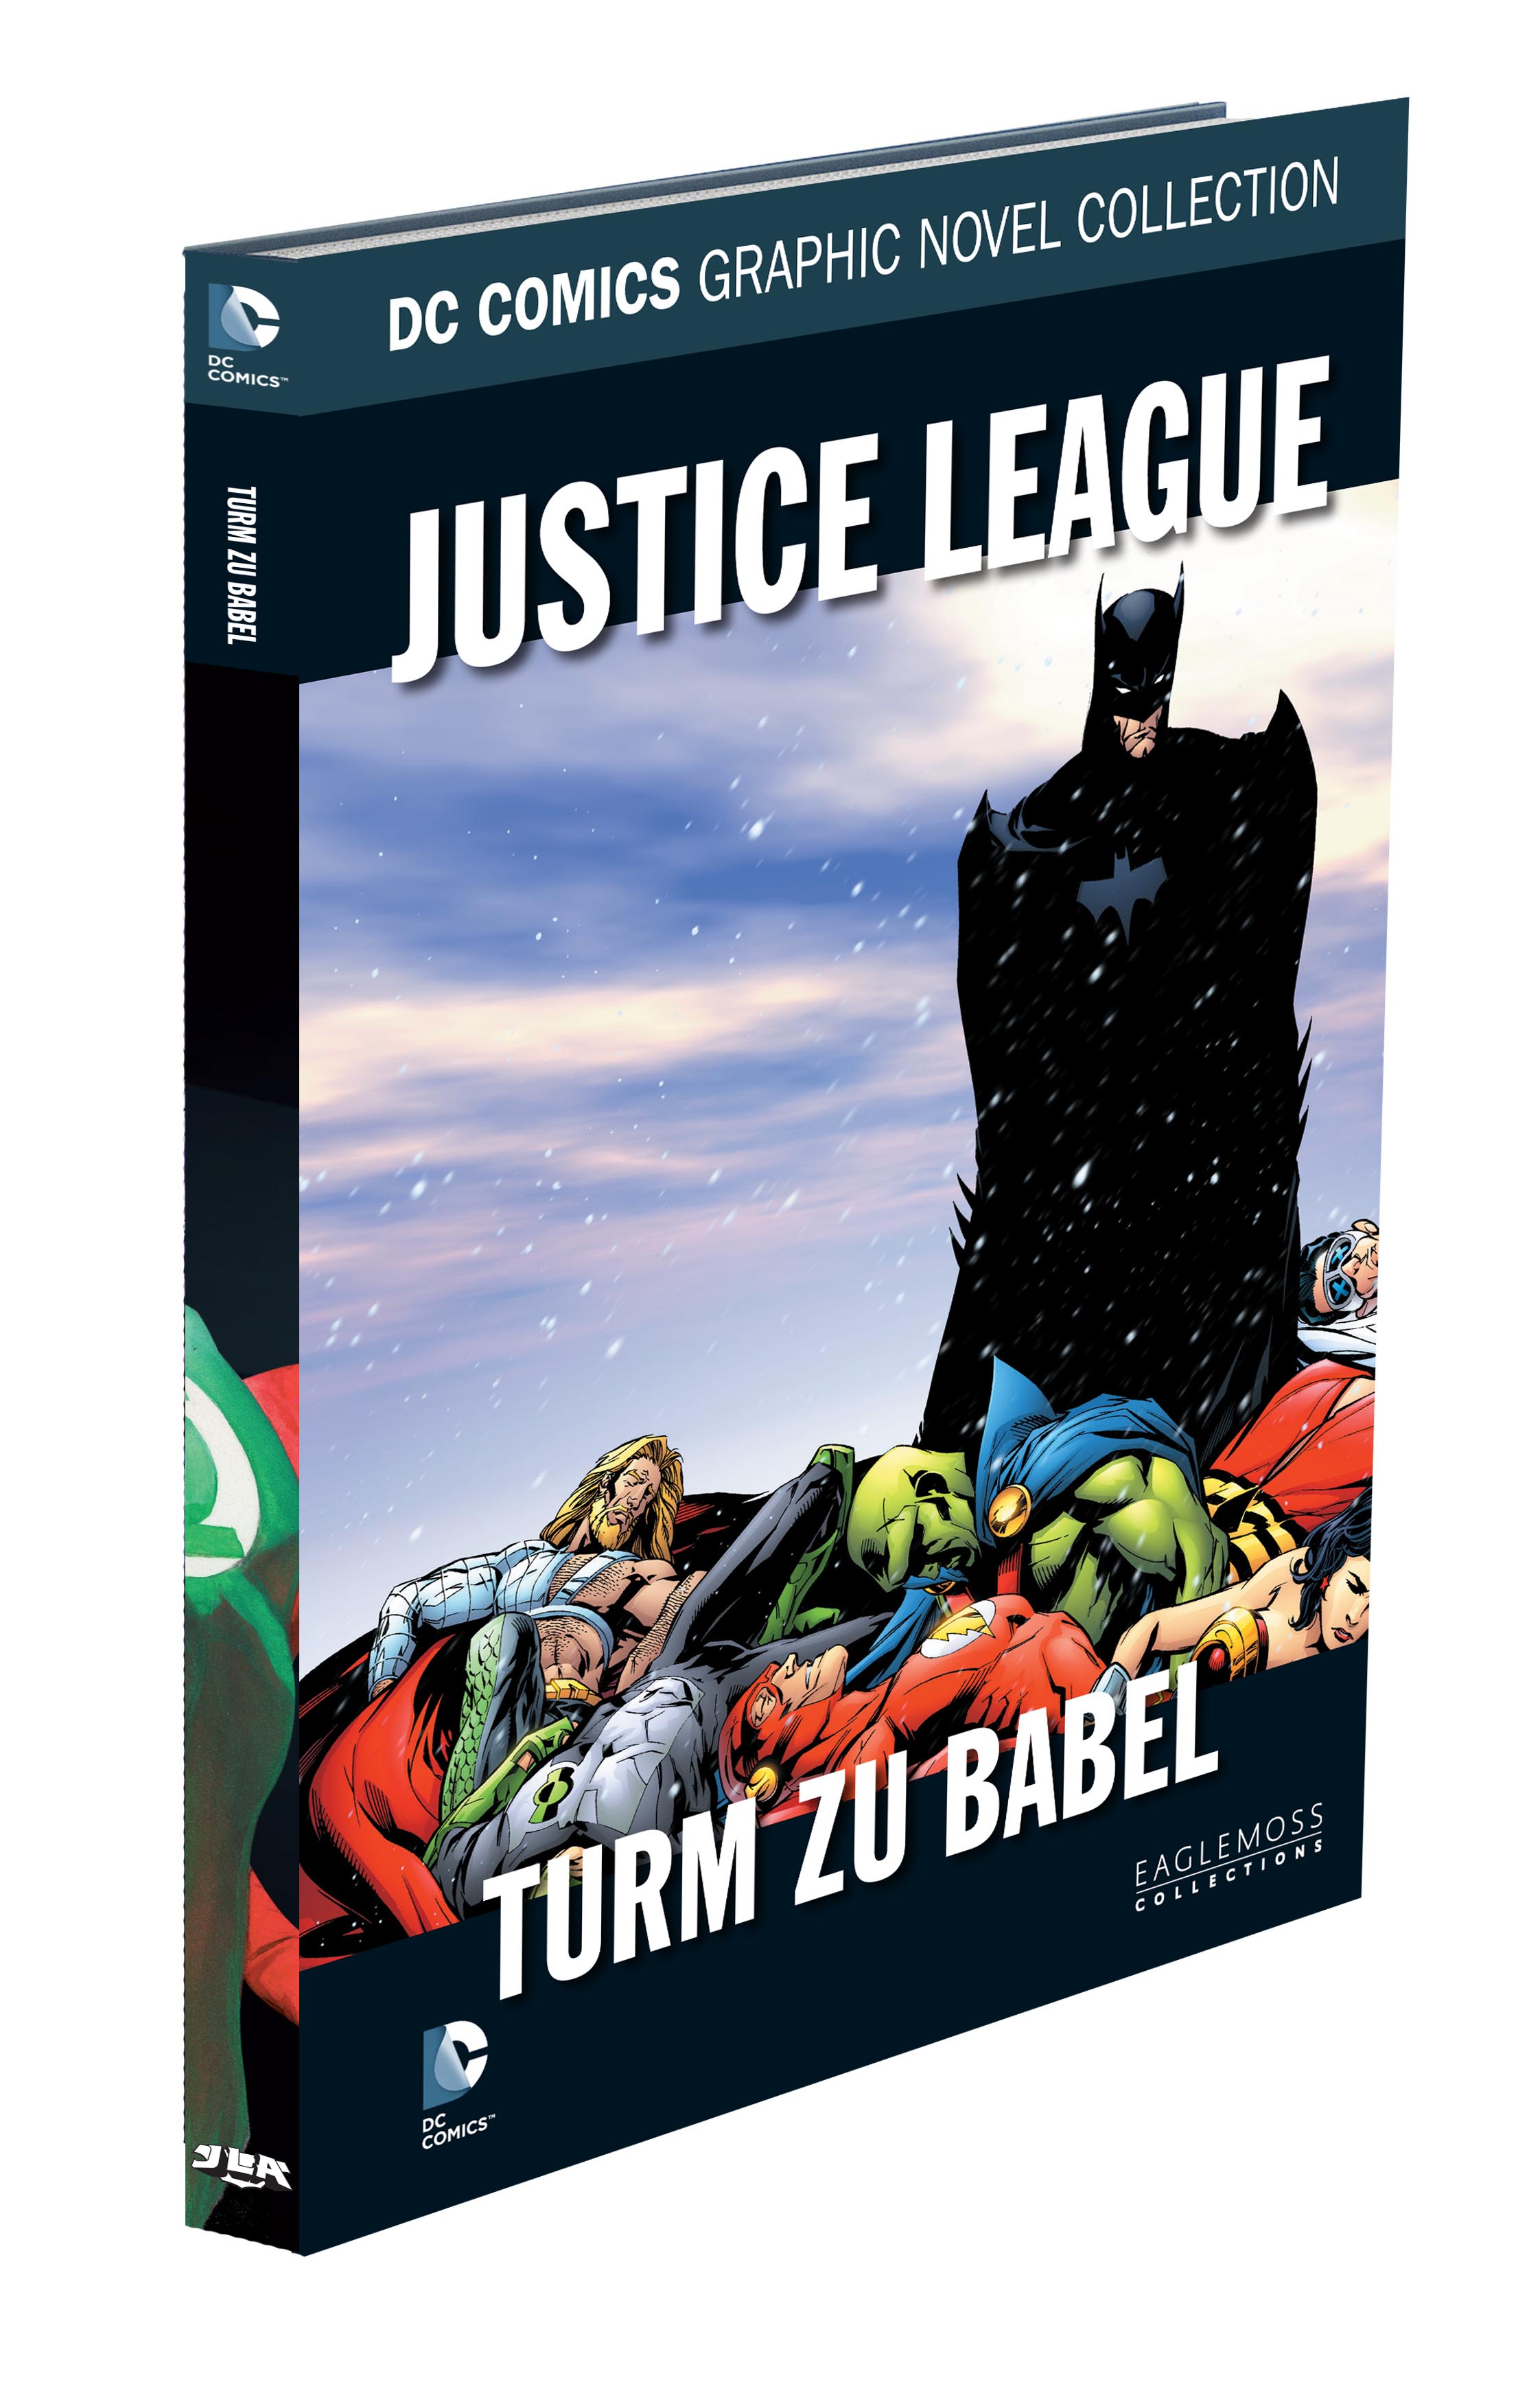 DC Comics Graphic Novel Collection Justice League - Turm zu Babel